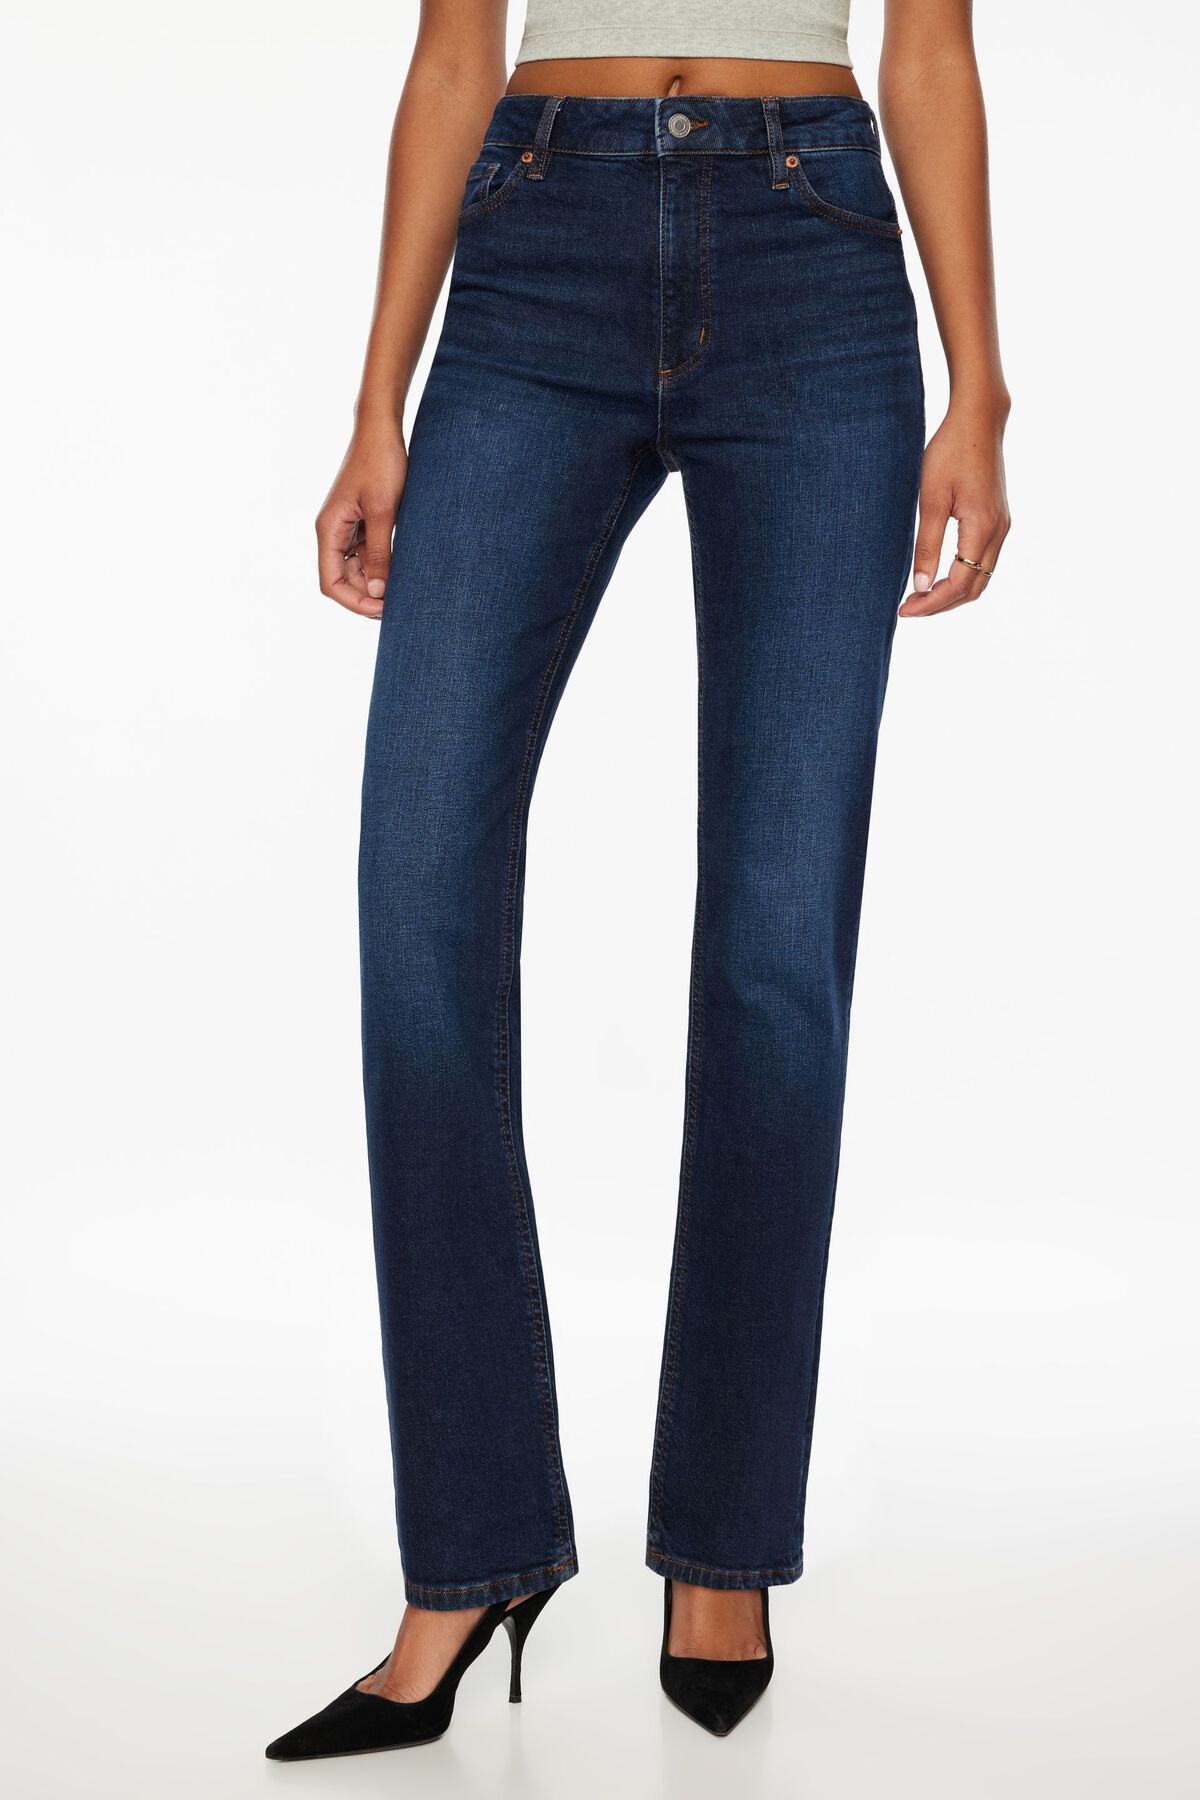 Dynamite Chiara Slim Straight Jeans. 2